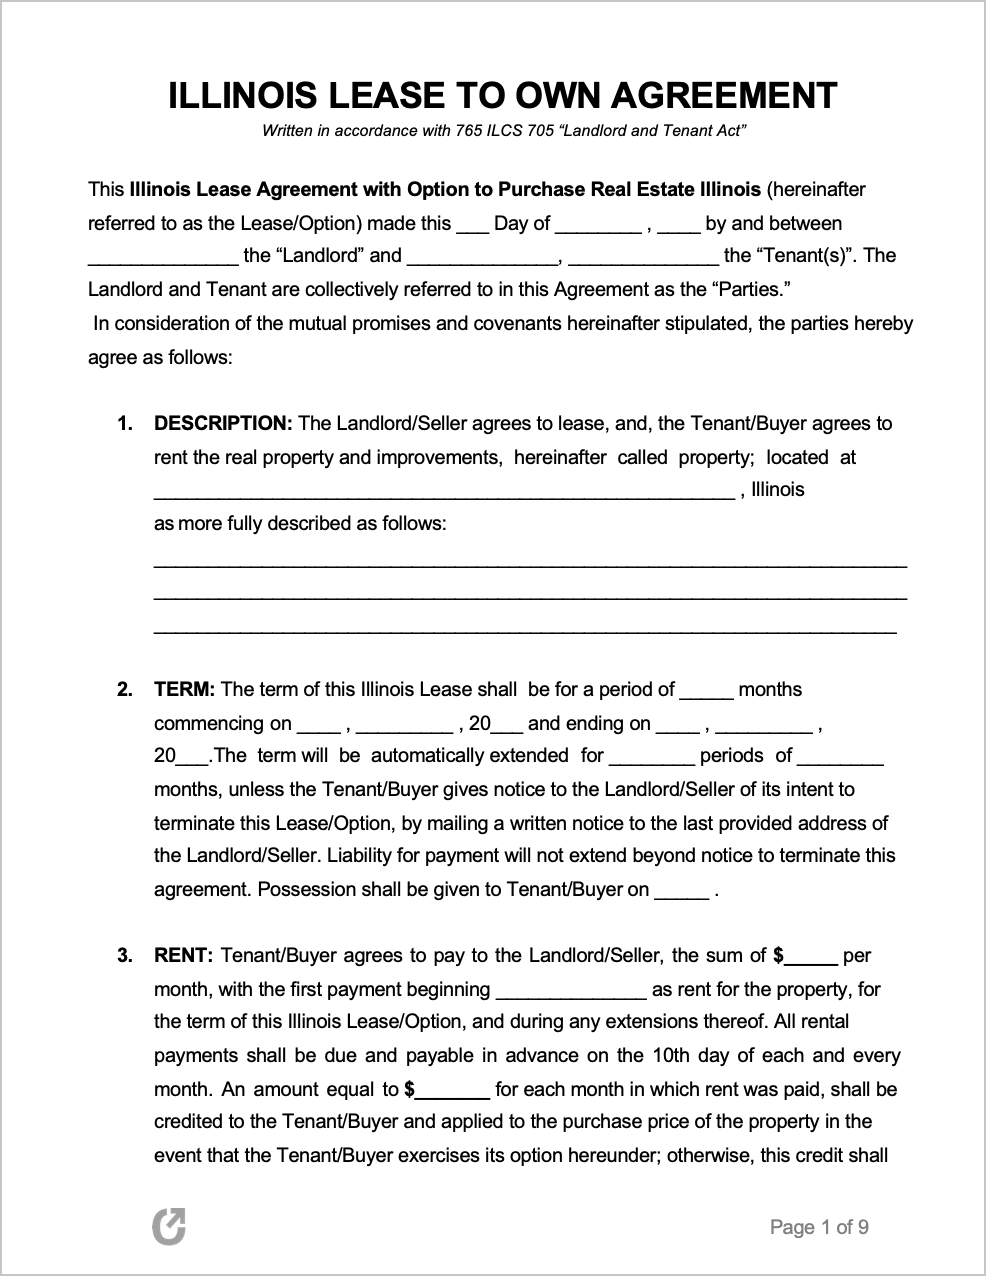 free-illinois-lease-to-own-agreement-pdf-word